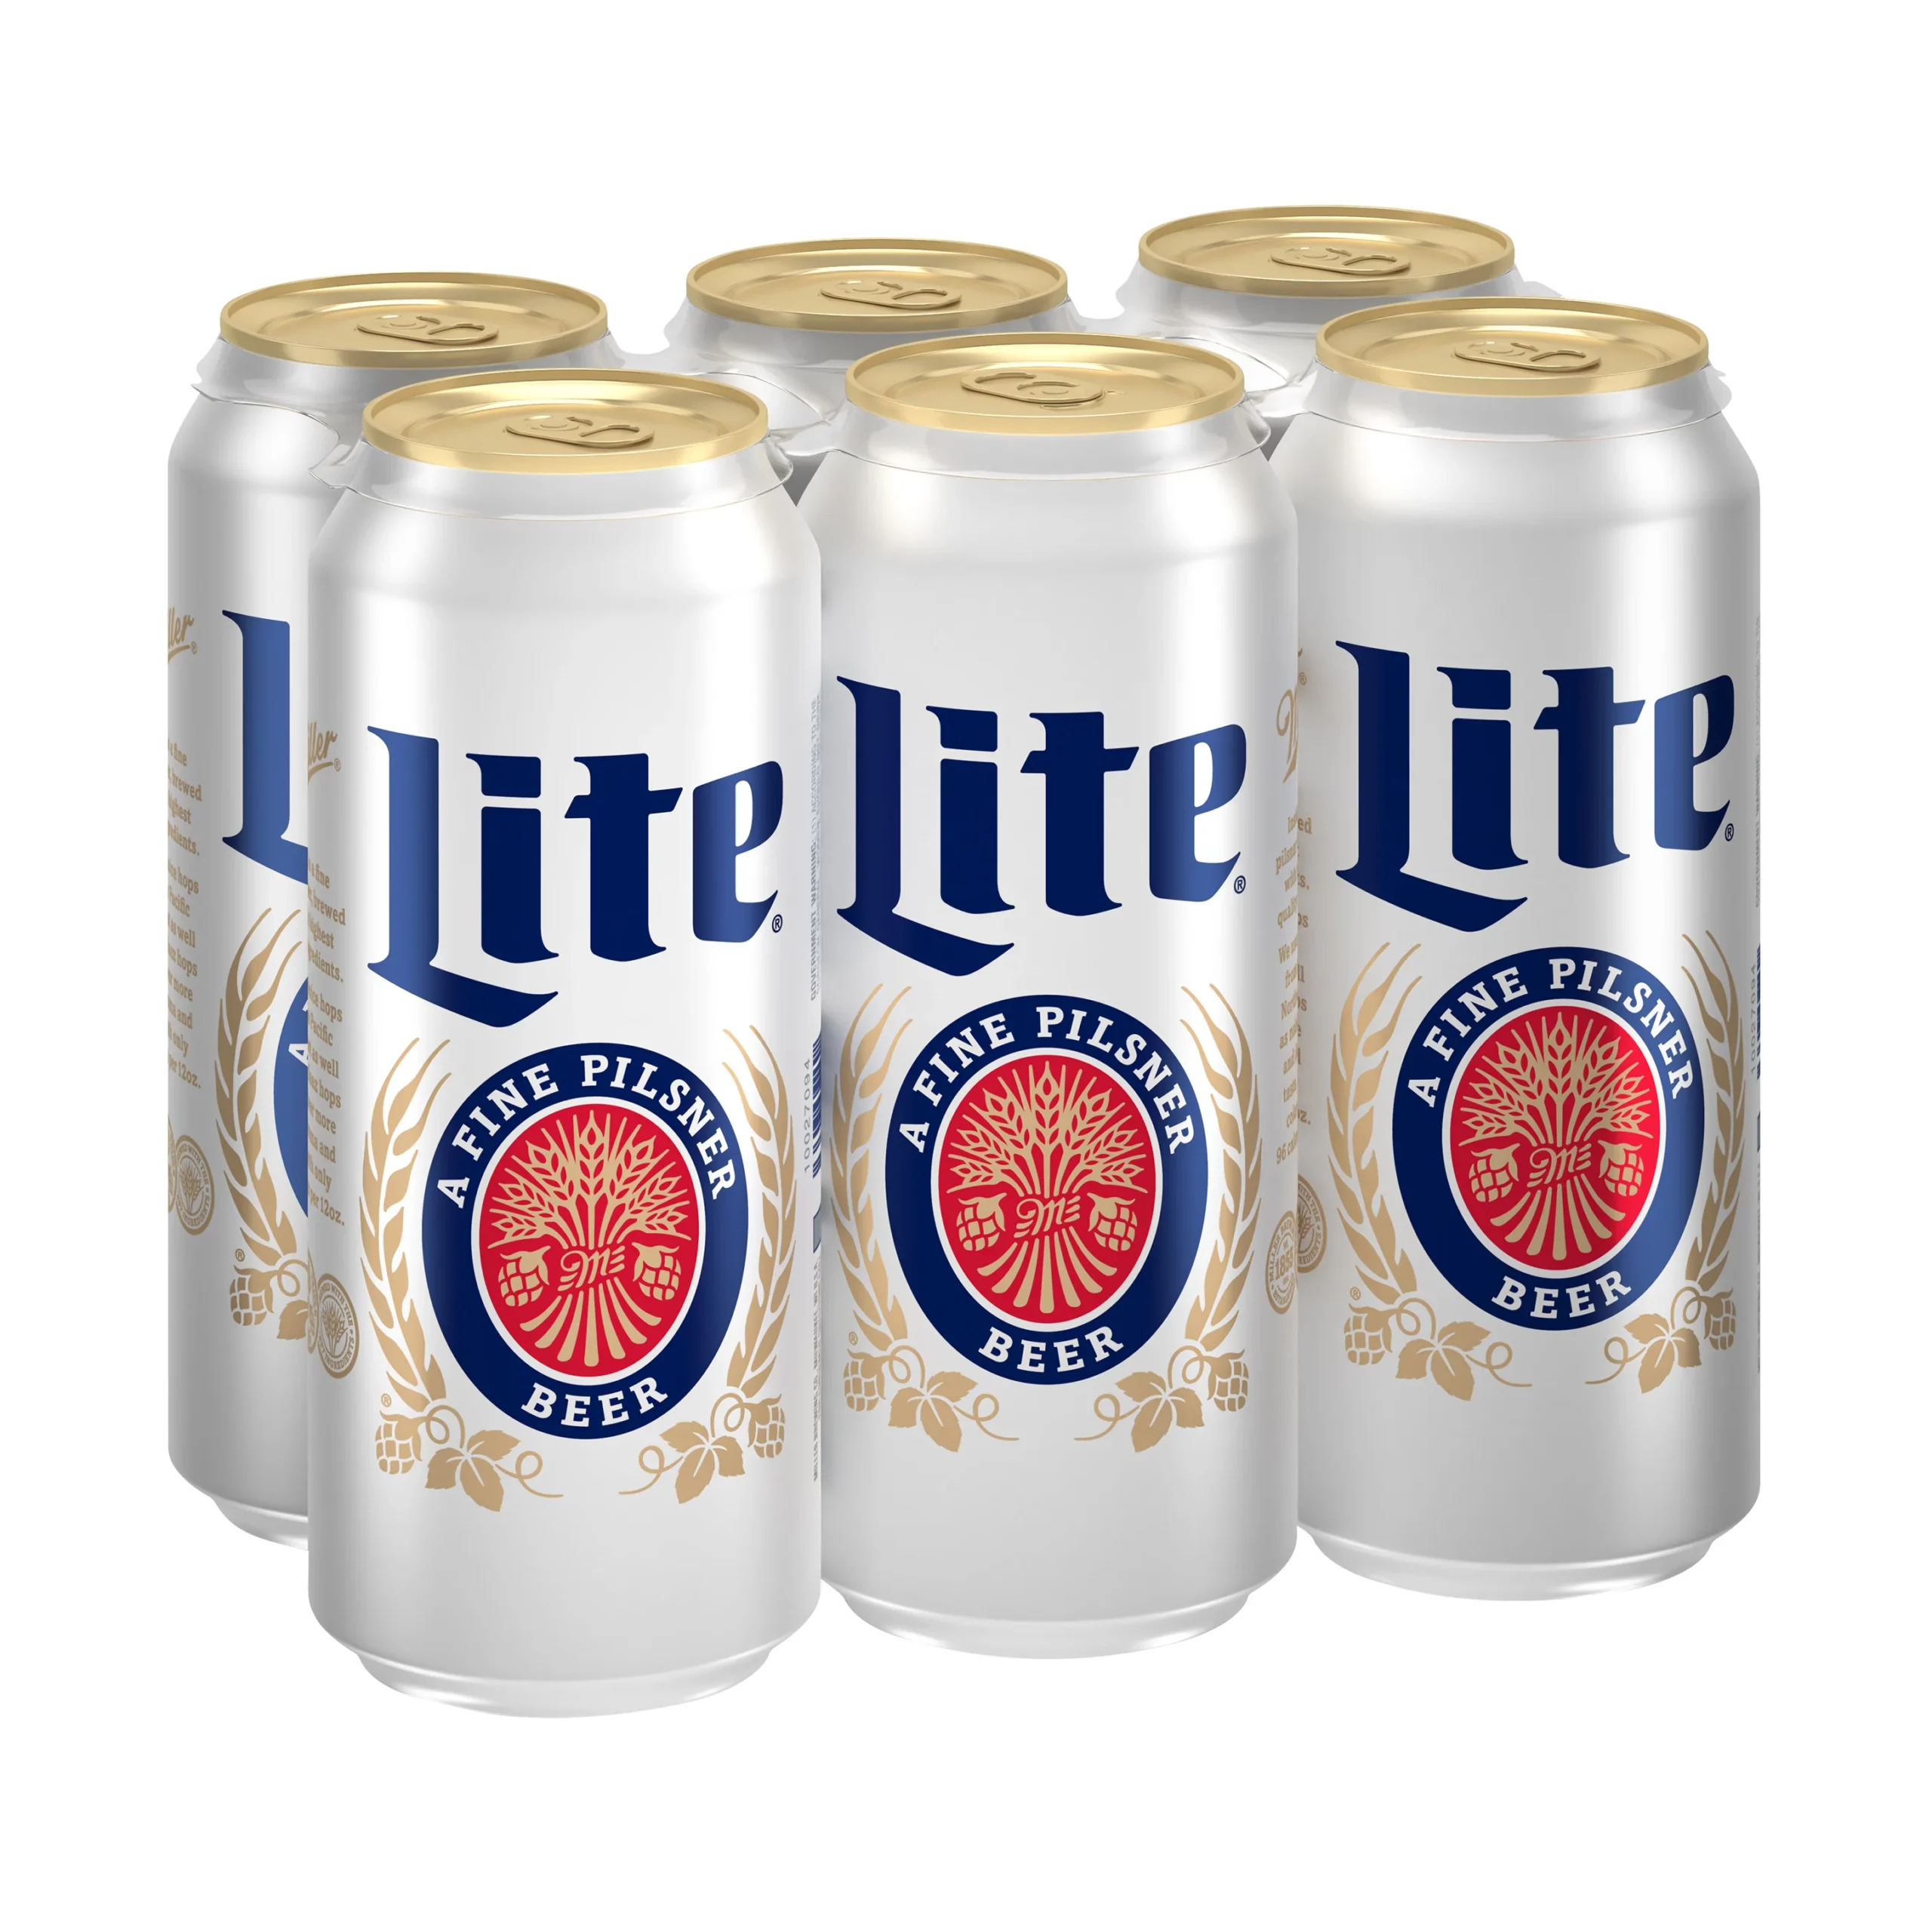 What Is Miller Lite Beer?